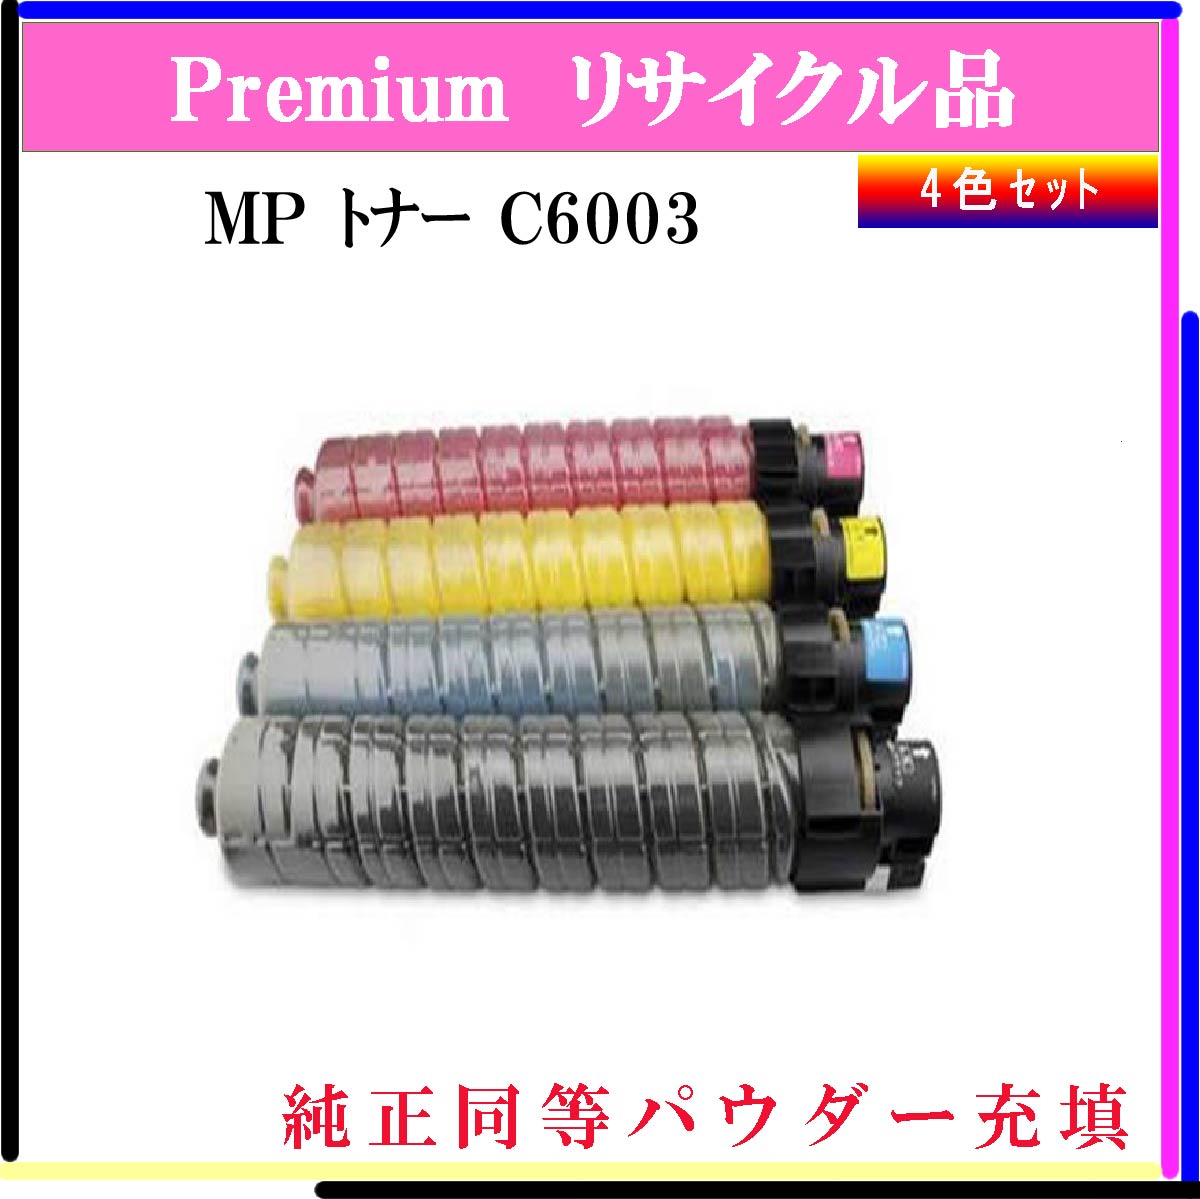 MP ﾄﾅｰ C6003 (4色ｾｯﾄ) (純正同等ﾊﾟｳﾀﾞｰ)